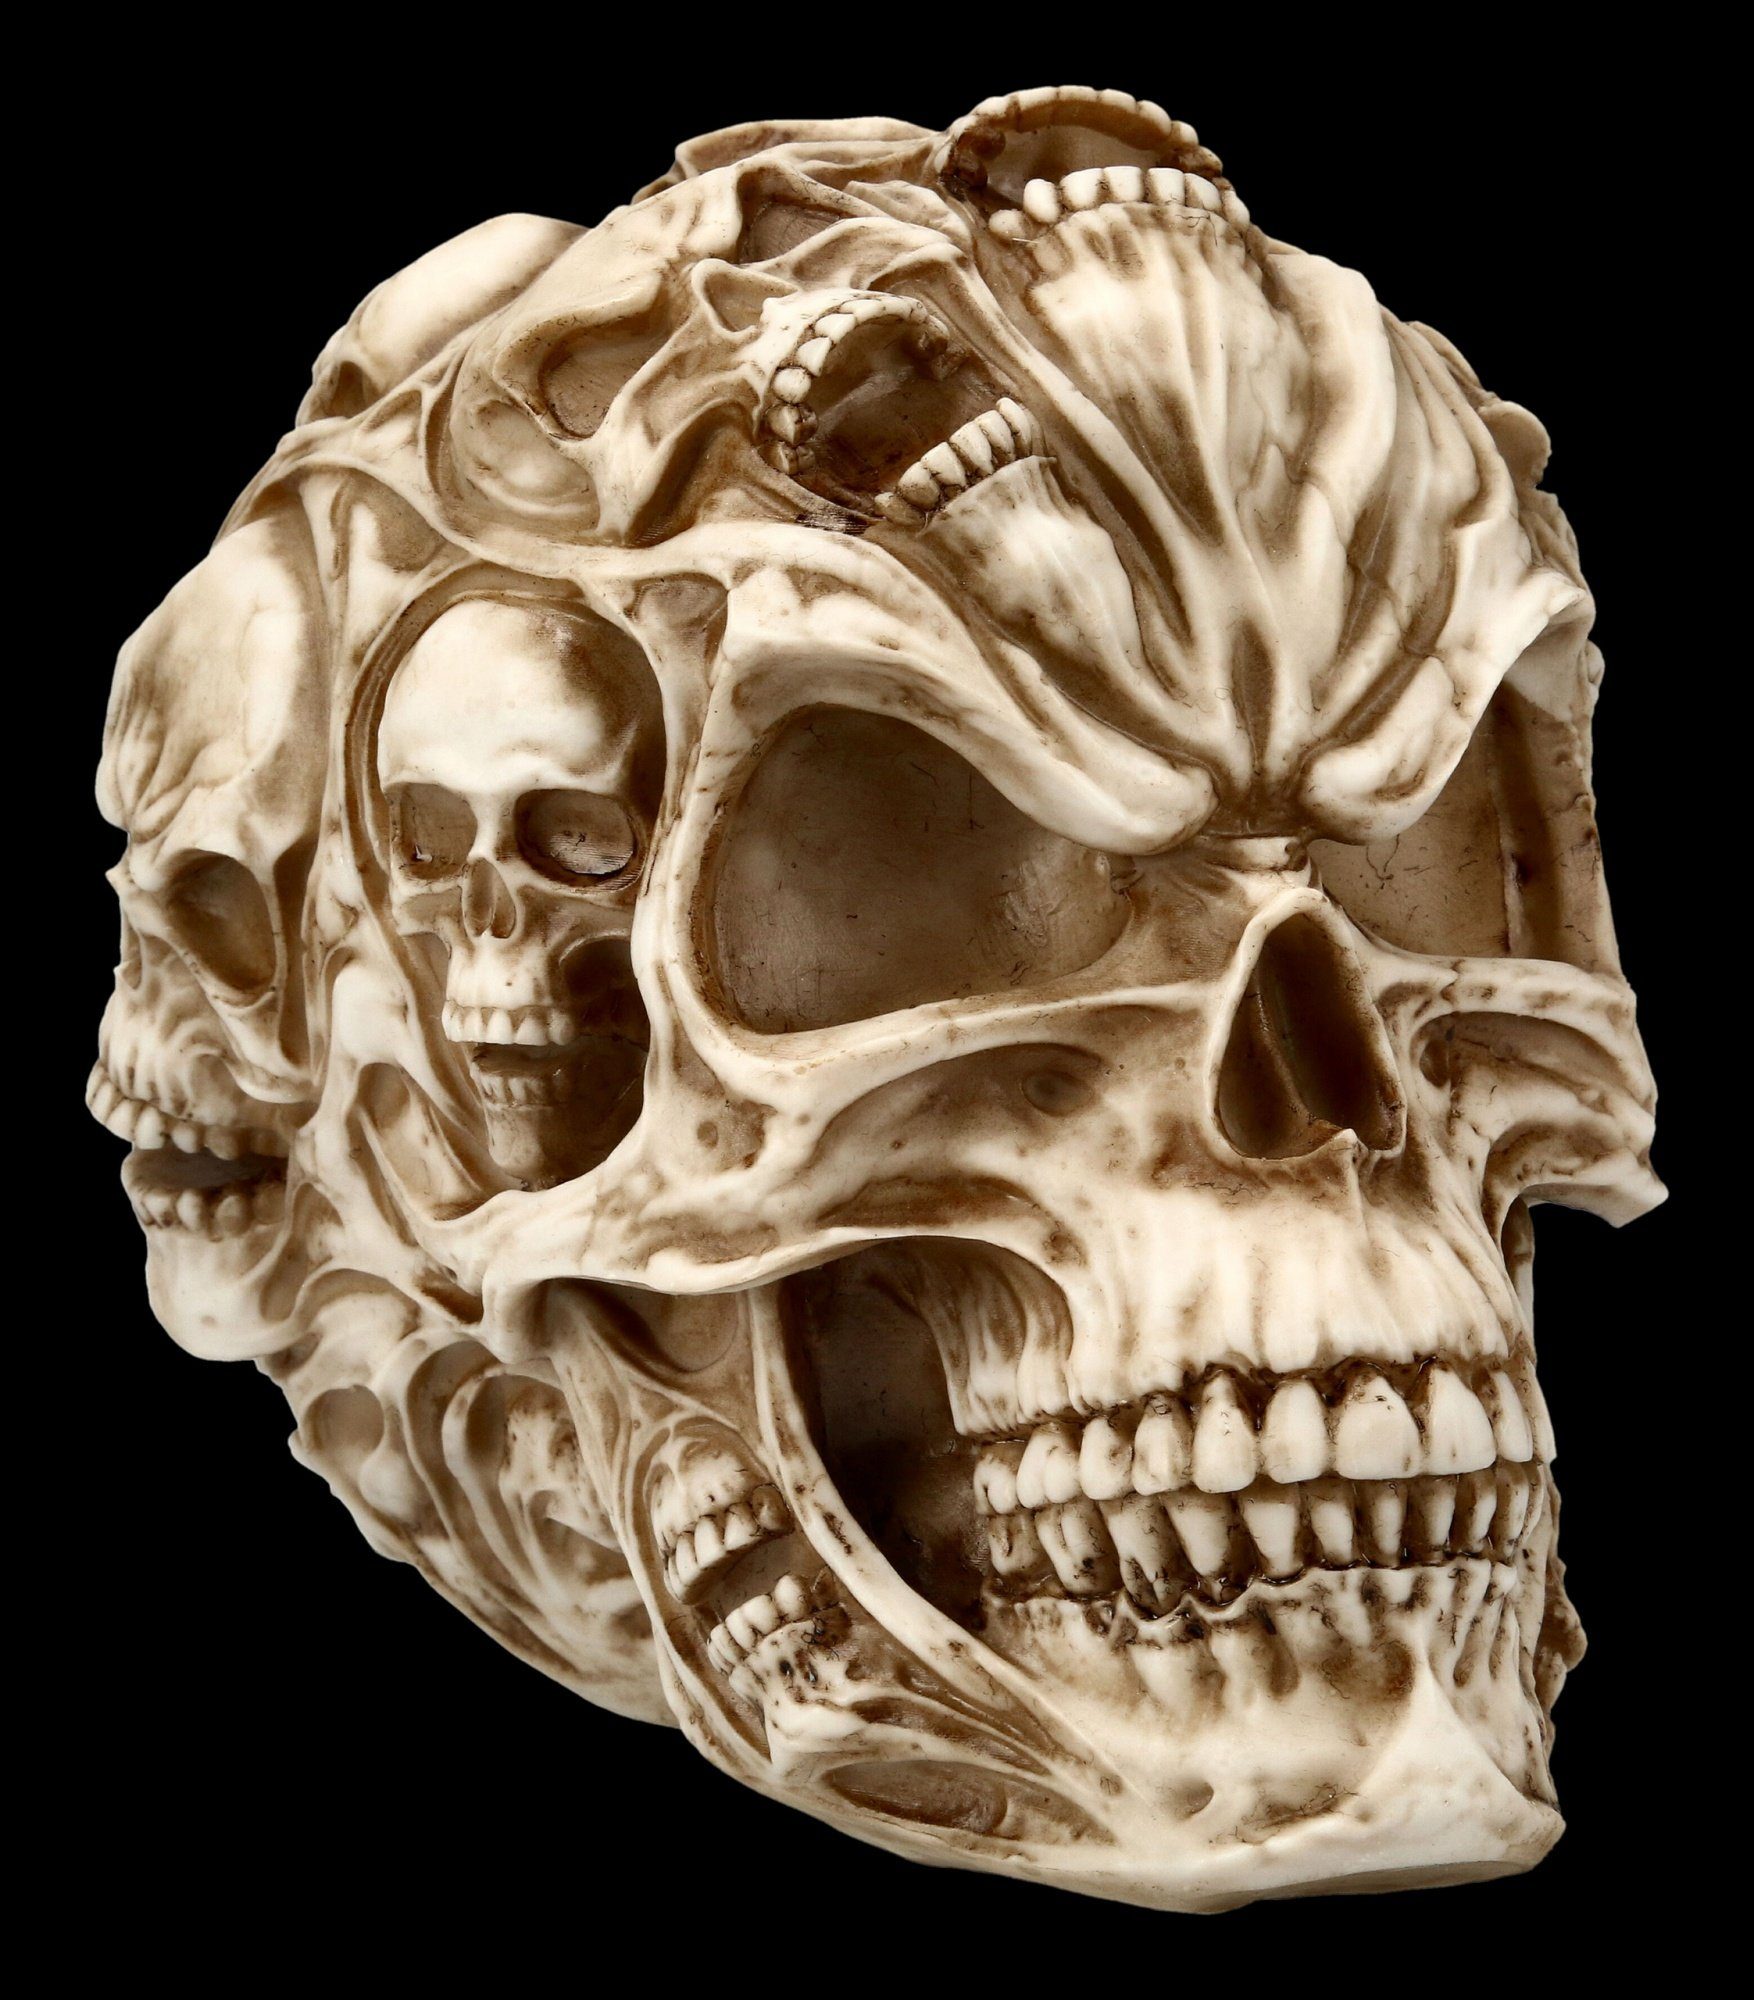 Totenkopf - Menschen Schädel - Figur Deko Totenschädel Skull